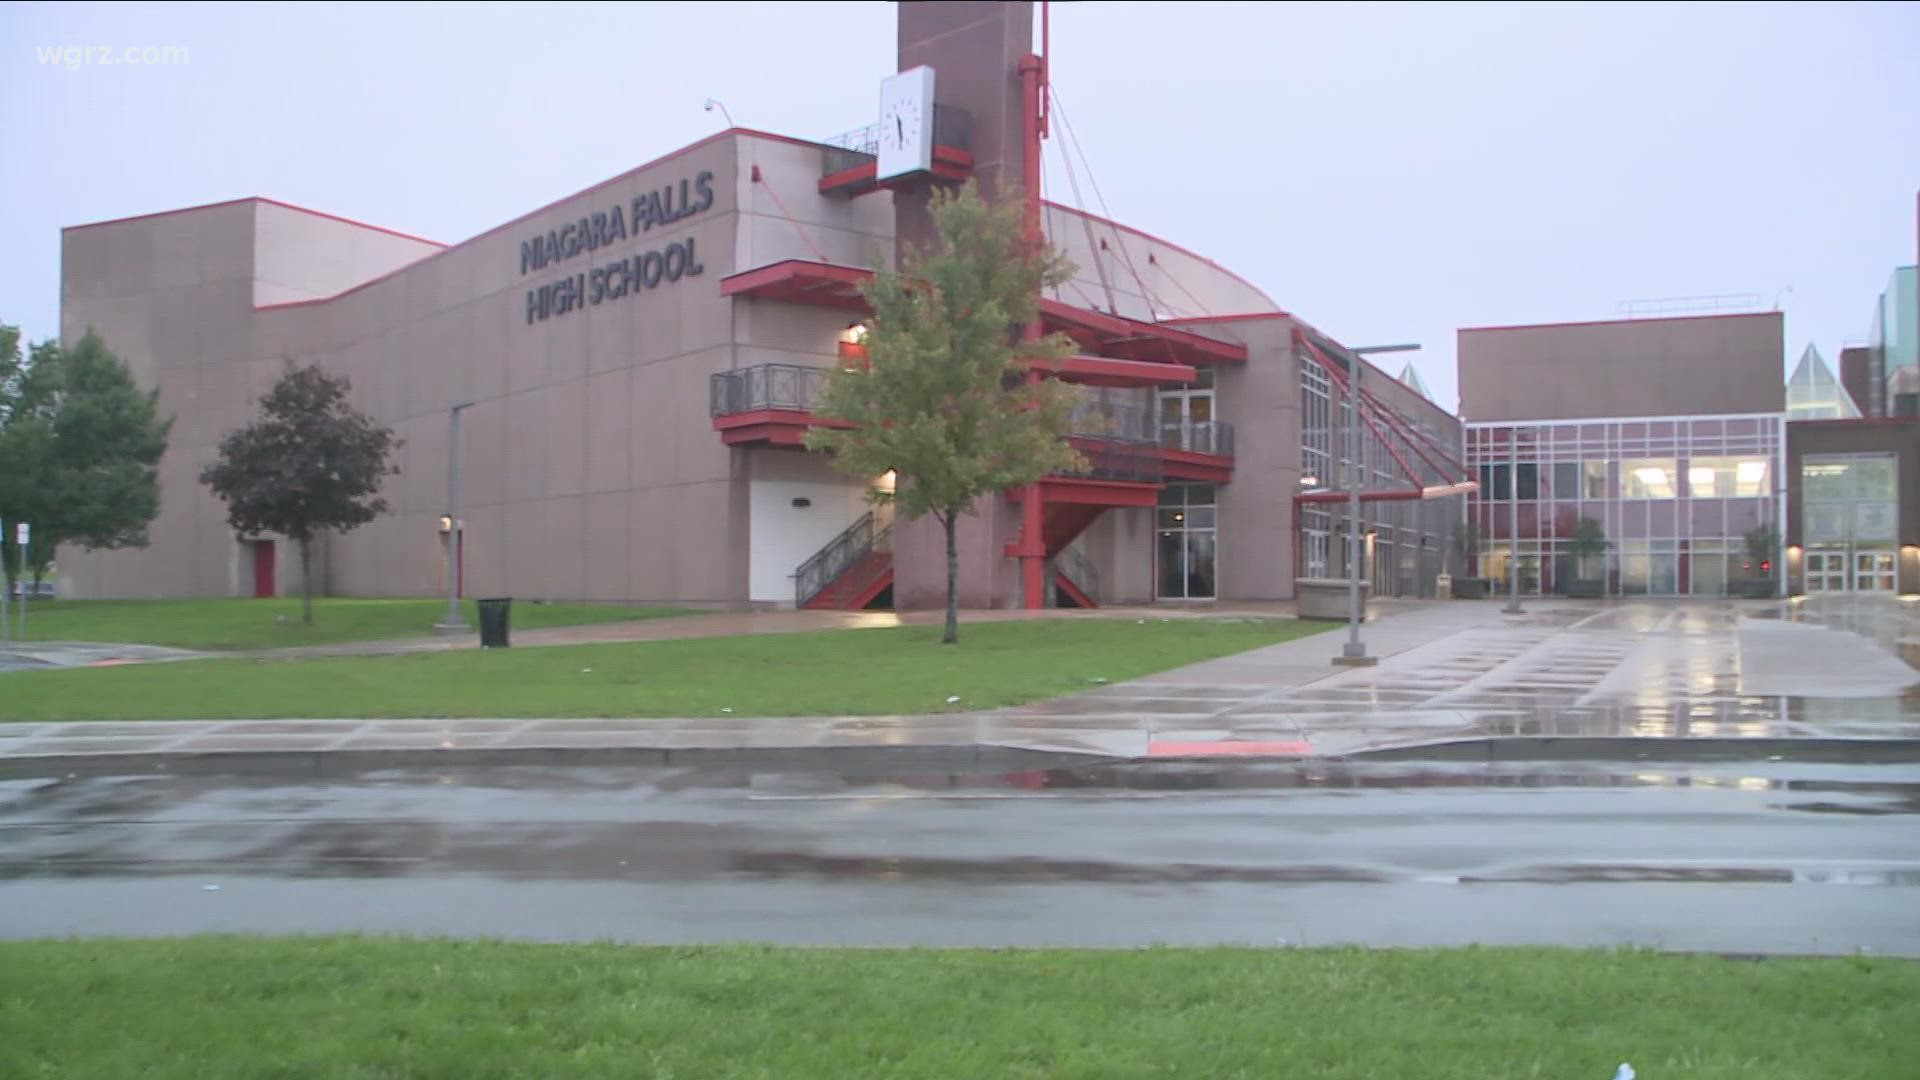 Teen charged in Niagara Falls high school threats